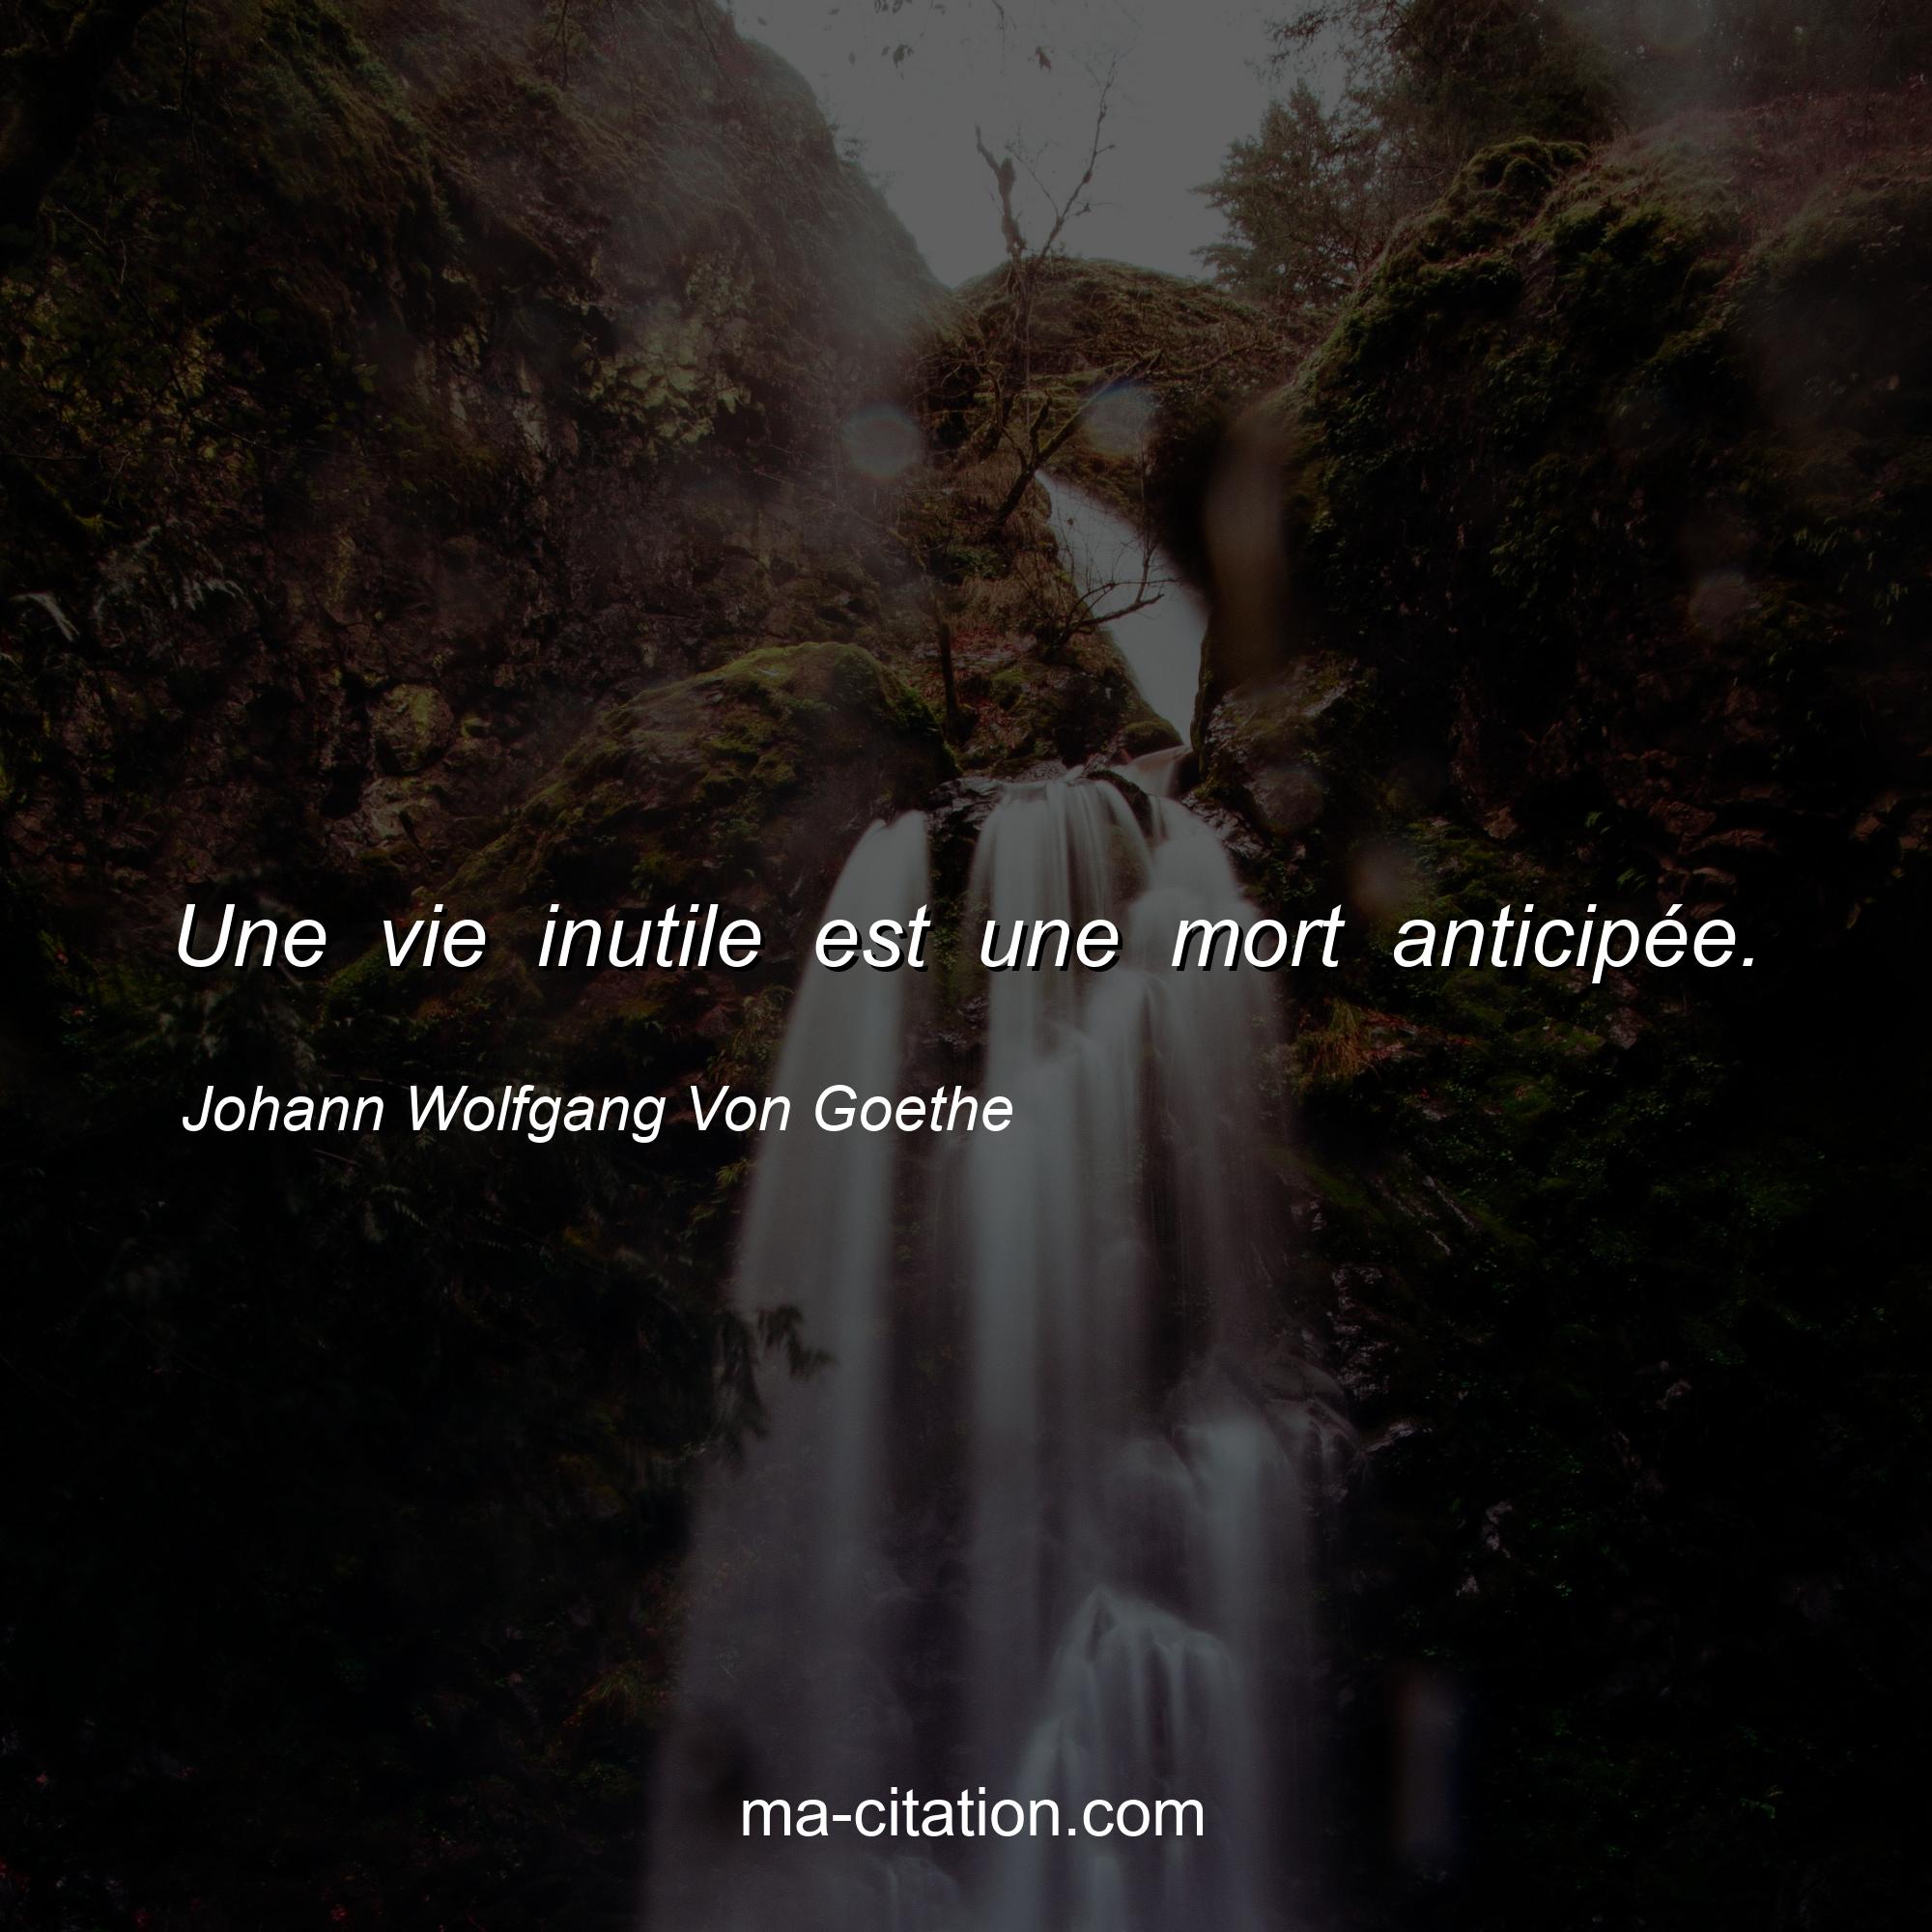 Johann Wolfgang Von Goethe : Une vie inutile est une mort anticipée.